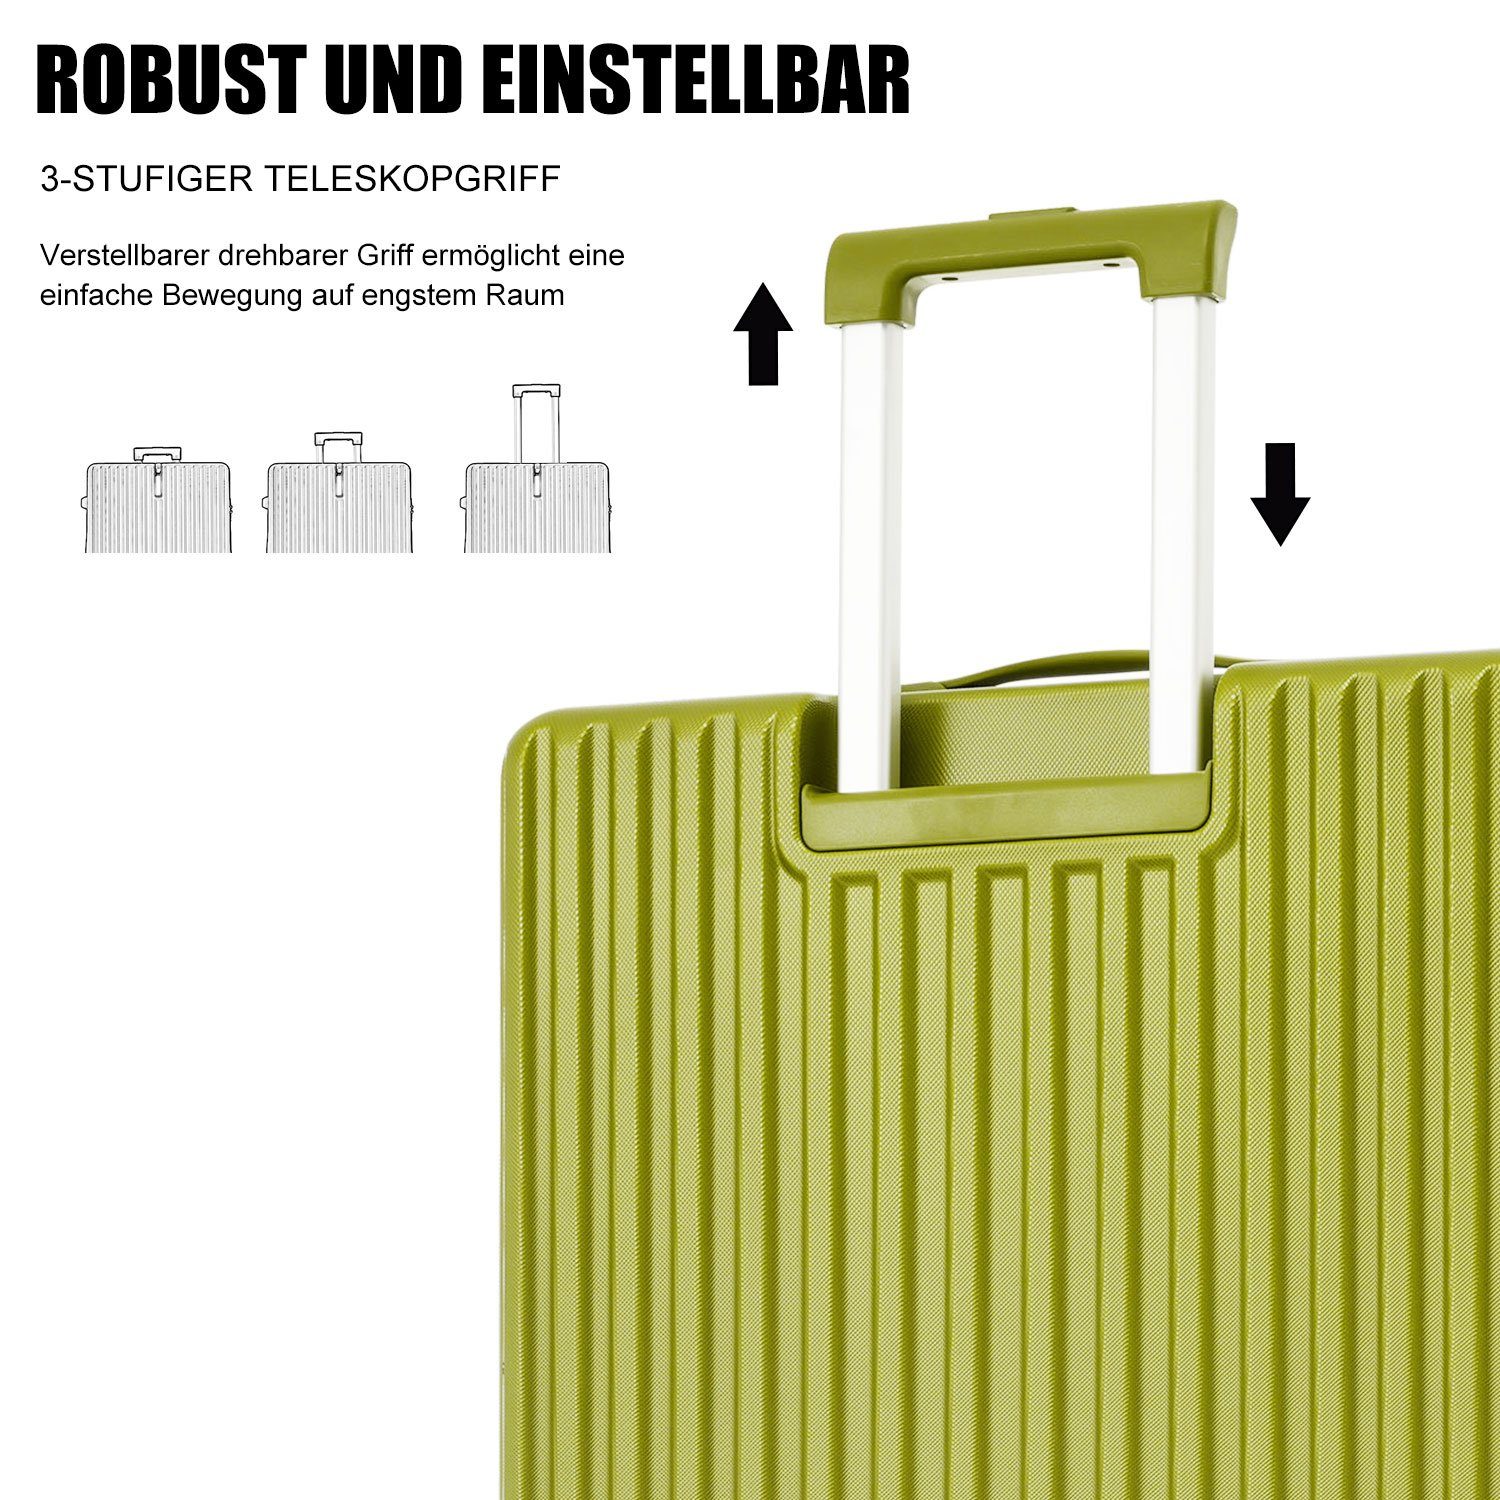 tlg) Rollen, 4 REDOM Grün Hartschalentrolley Kofferset (3 Trolleyset Handgepäck Reisekoffer Set,